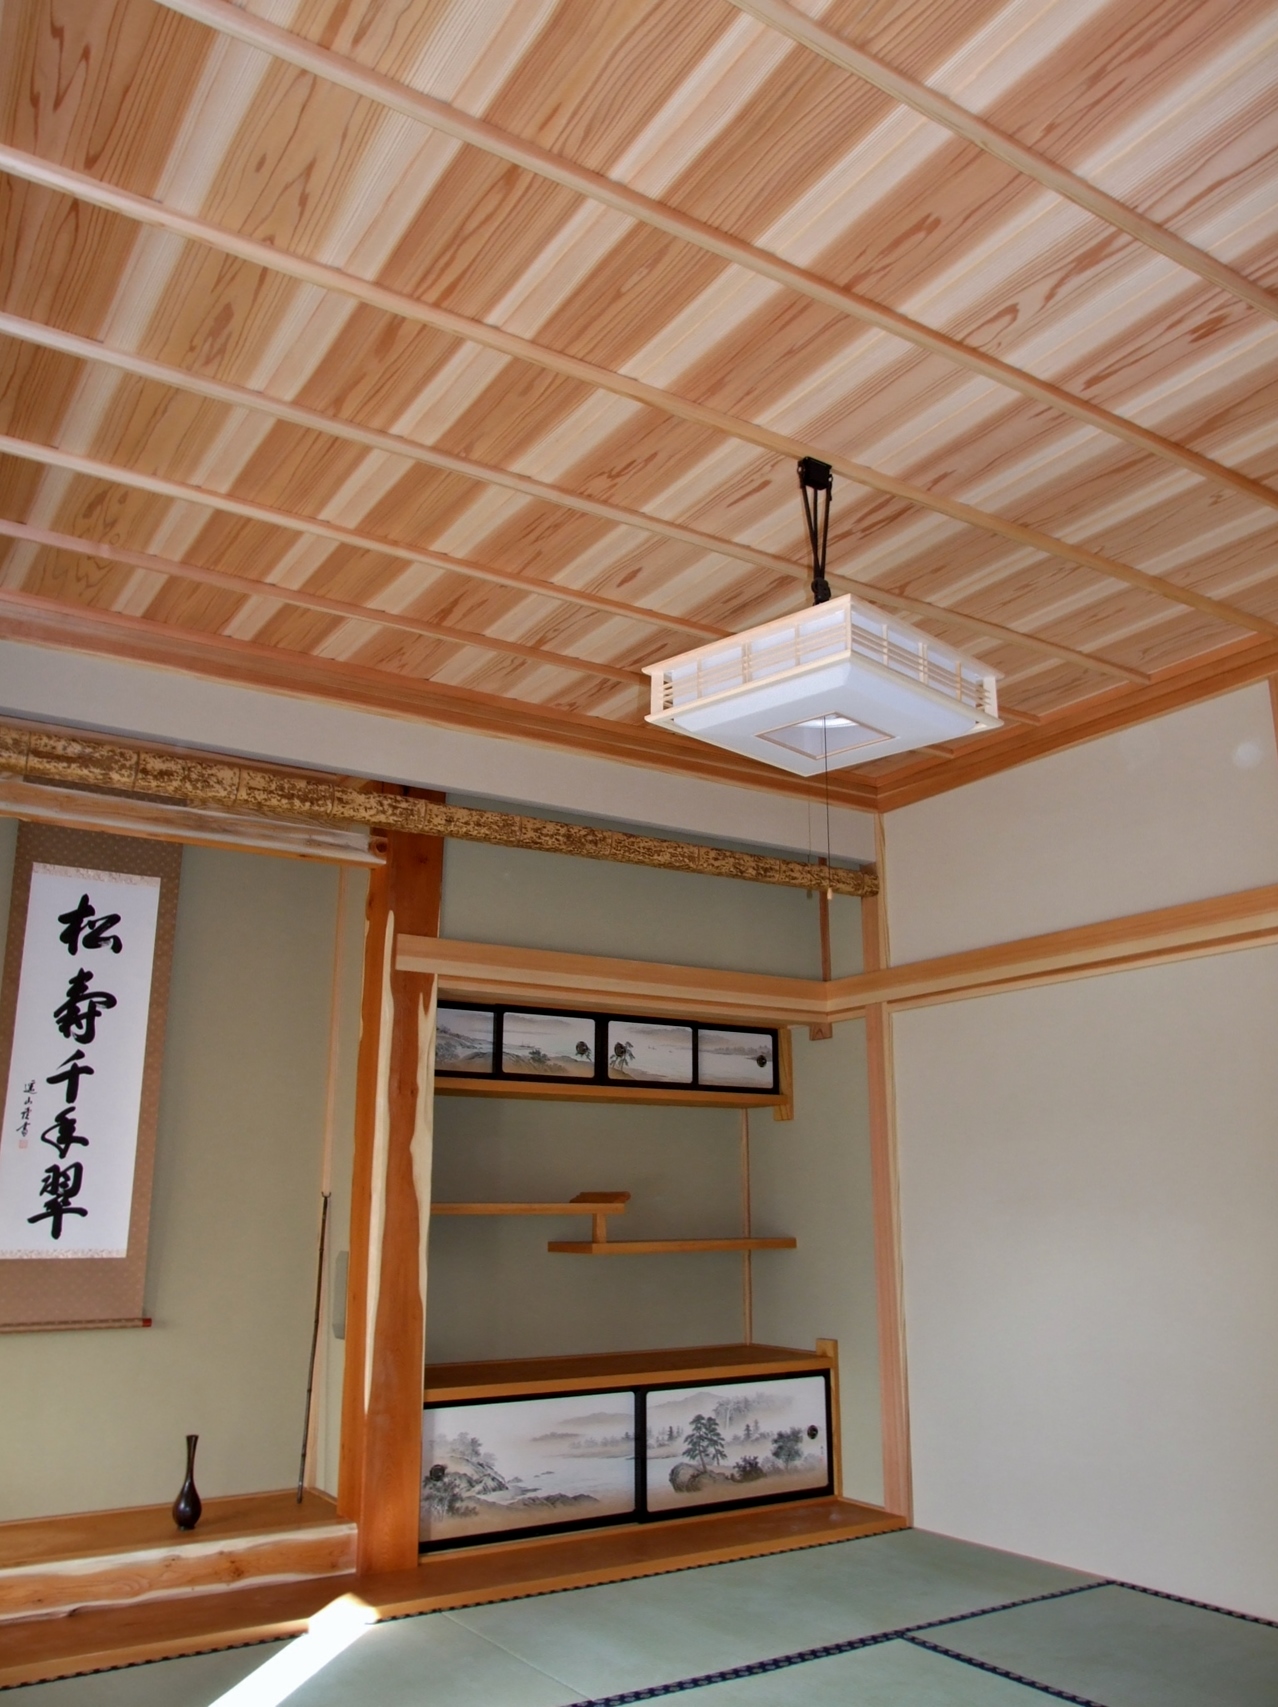 座敷の天井板【杉無垢天井板の事例】 | 無垢材・一枚板などの木材と